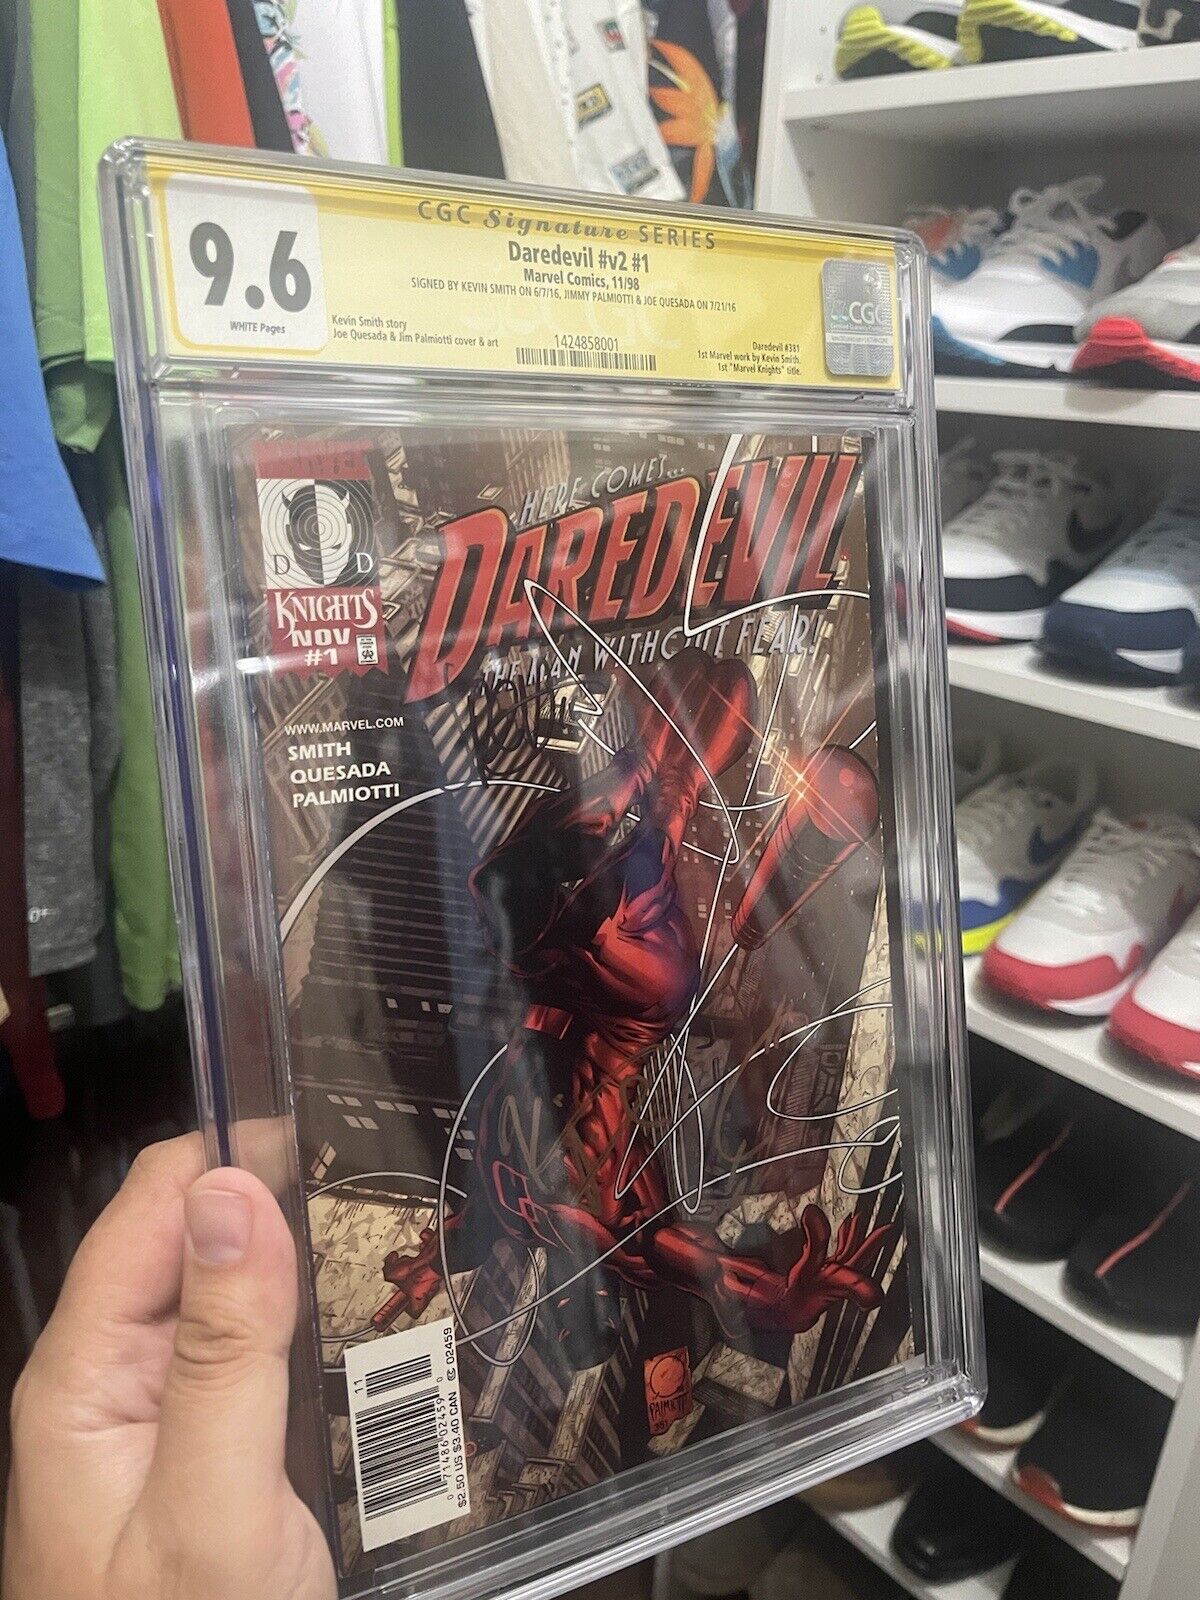 Daredevil CGC Signature series 9.6